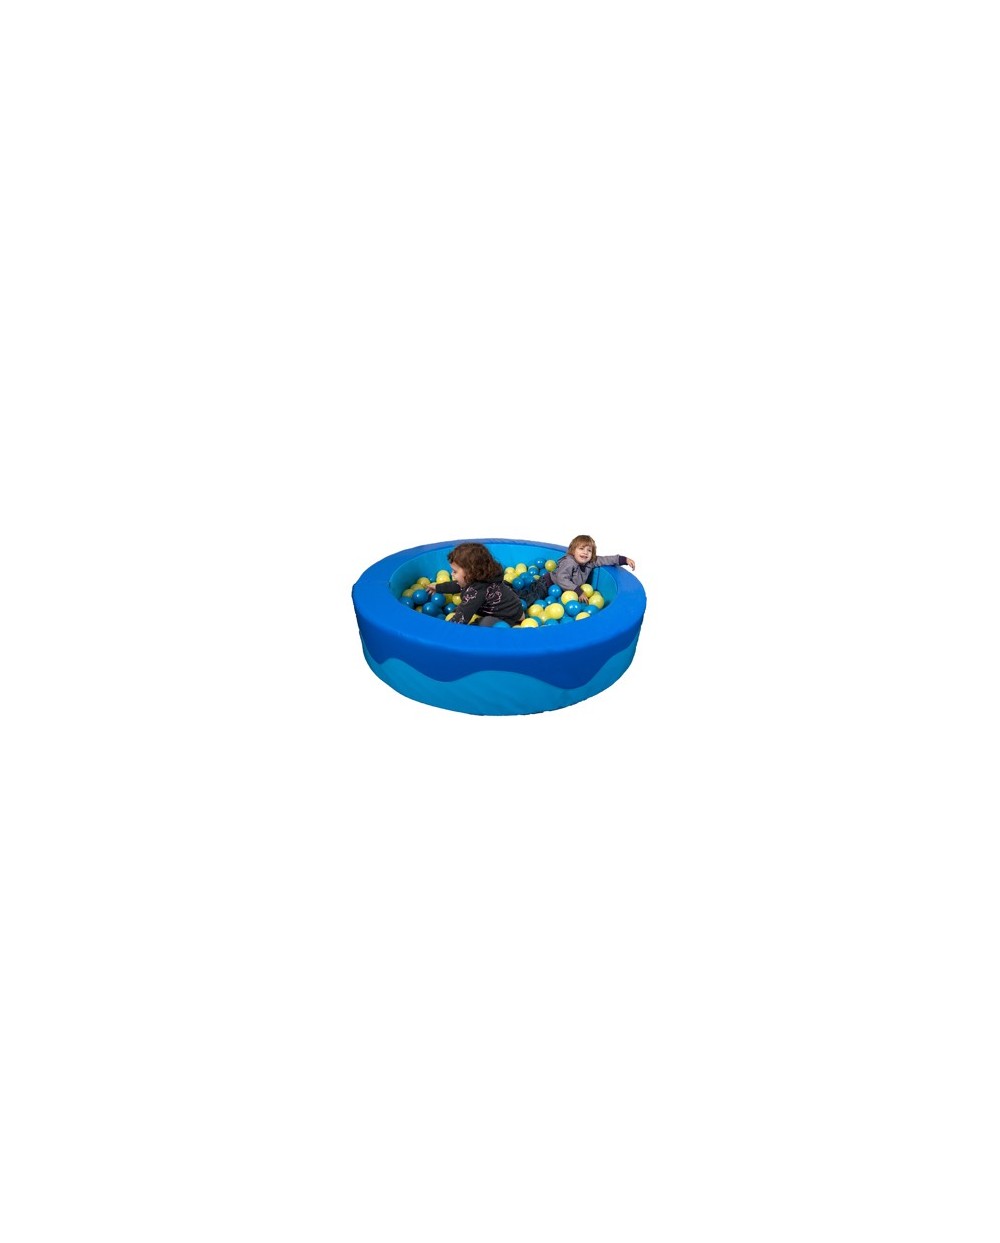 Piscina bolas sumo didactic redonda azul celeste 2 sacos de bolas 150x30x15 cm